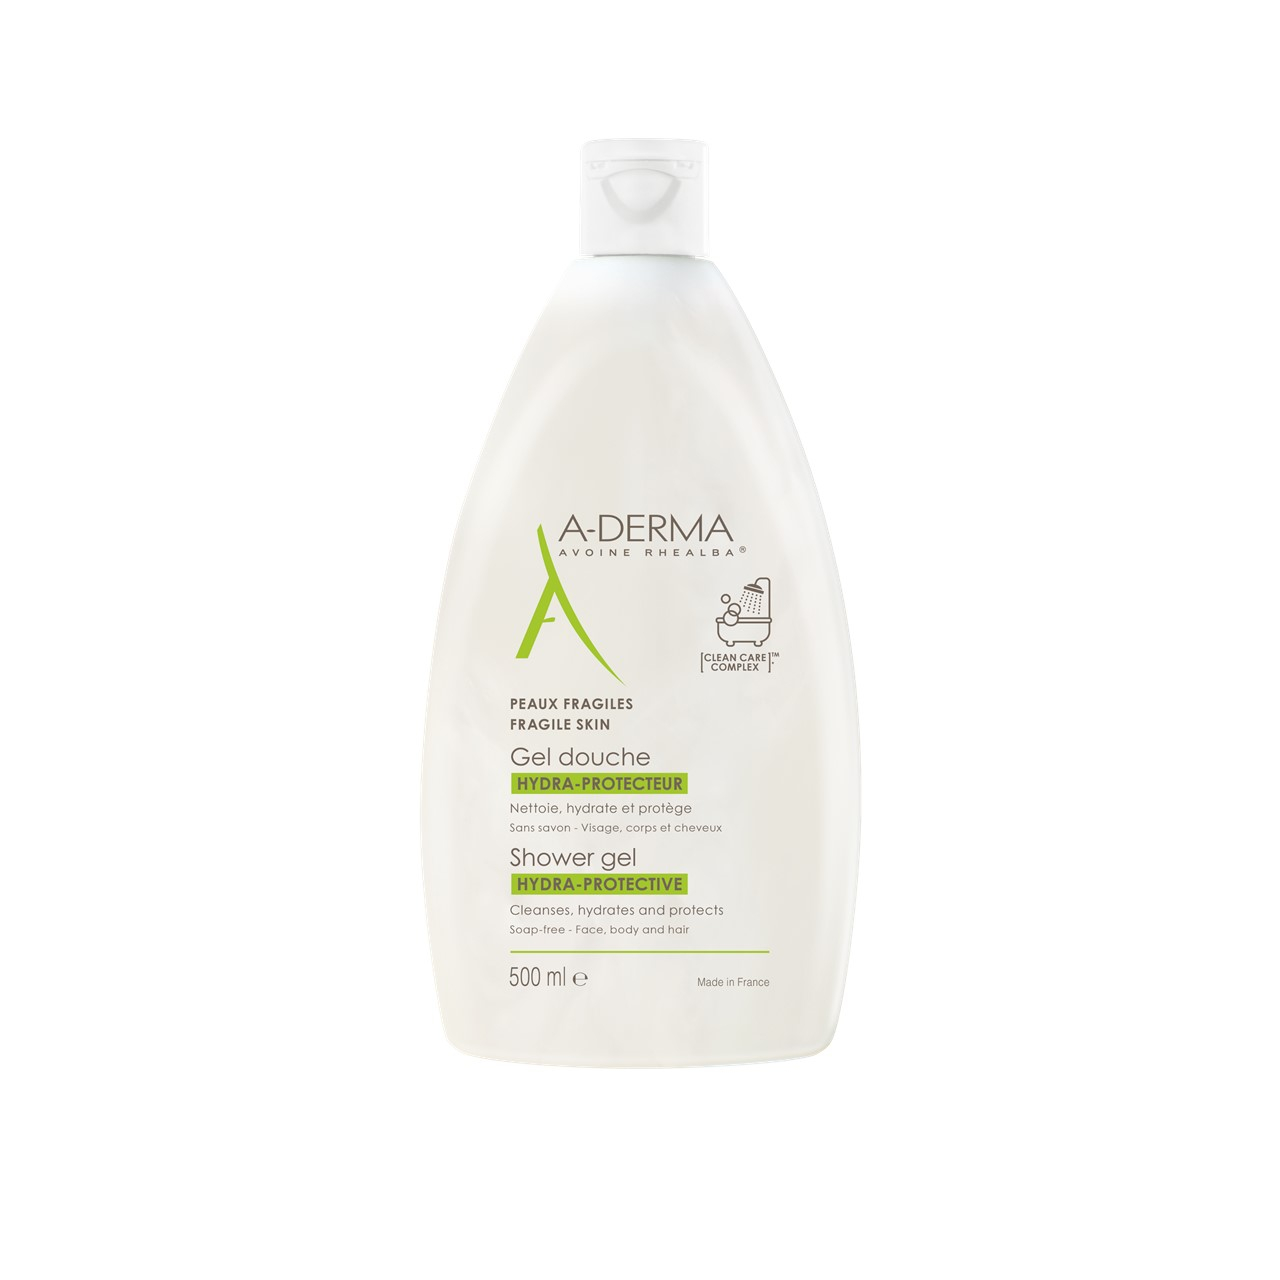 A-Derma Shower Gel Hydra-Protective 500ml (16.91fl oz)